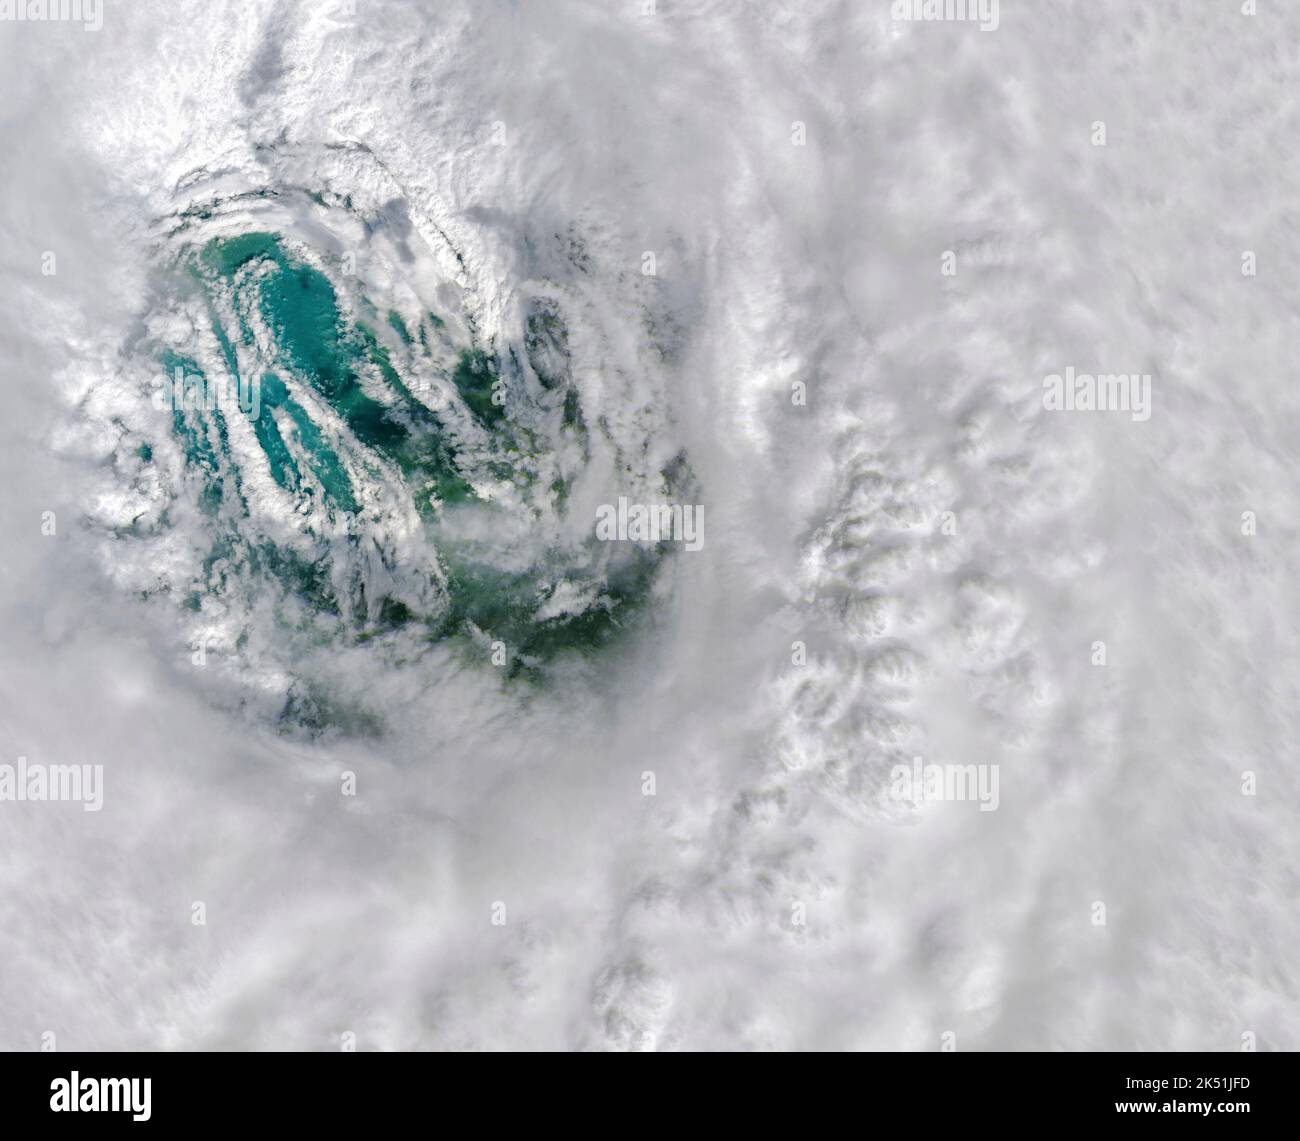 L'Operational Land Imager a bordo del satellite Landsat 8 catturò questa immagine a colori naturali dell'uragano Ians Eye il 28 settembre 2022 alle 11:57:00 EDT (15:57:00 UTC), tre ore prima che la tempesta si schiantò nella costa di Caya Costa, Florida. Quando la palpebra di Ians ha fatto la caduta, i suoi venti sostenuti massimi erano 150 miglia (240 chilometri) all'ora, secondo il Centro Nazionale per l'uragano. Questo è l'equivalente di una tempesta di categoria 4 sulla scala del vento Saffir-Simpson e abbastanza veloce da strappare i tetti fuori casa e schiocco di linee elettriche. L'occhio di un uragano è una zona circolare di tempo giusto al th Foto Stock